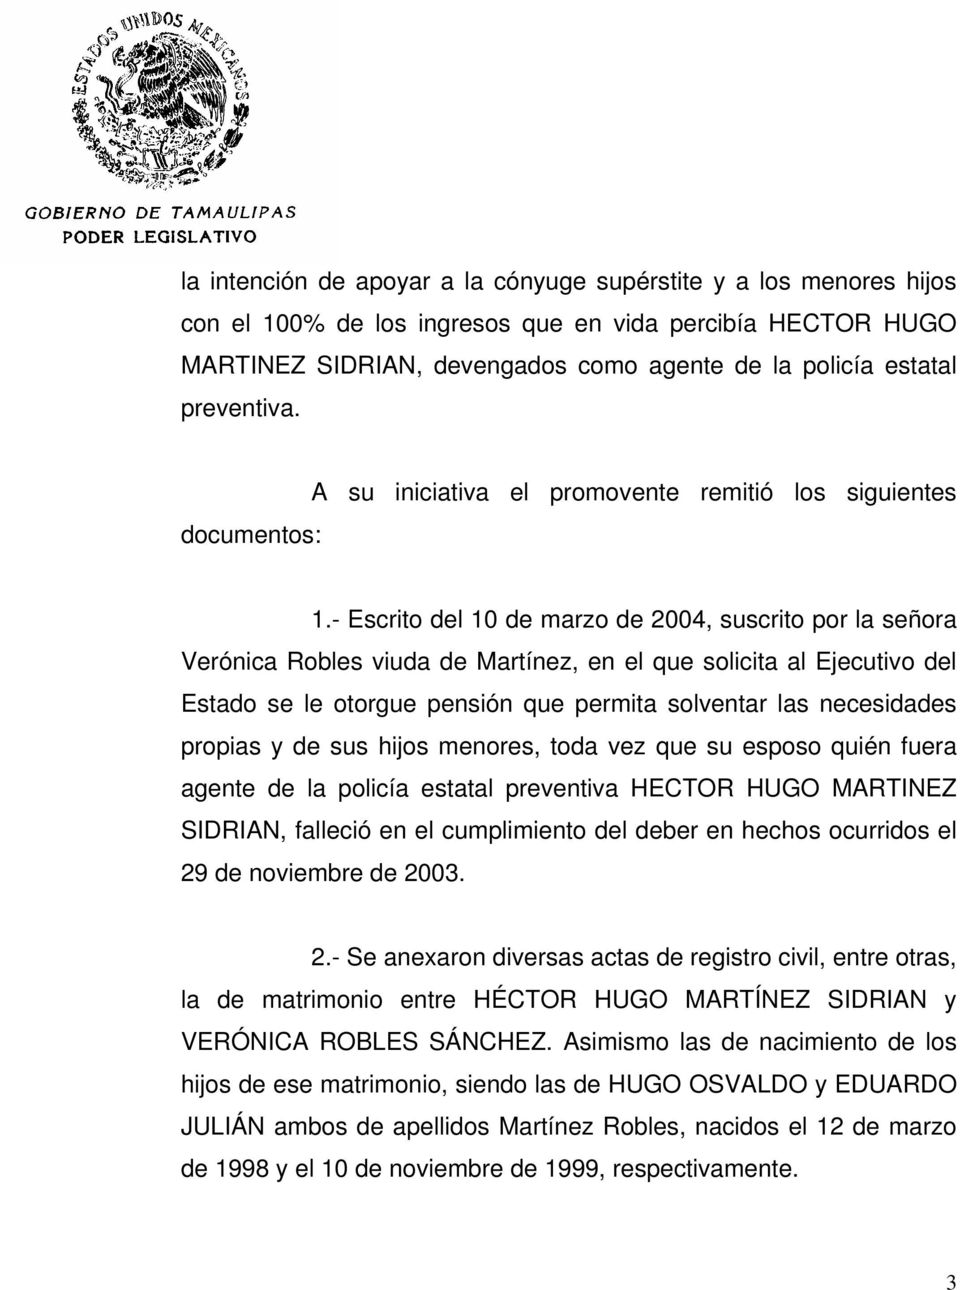 - Escrito del 10 de marzo de 2004, suscrito por la señora Verónica Robles viuda de Martínez, en el que solicita al Ejecutivo del Estado se le otorgue pensión que permita solventar las necesidades